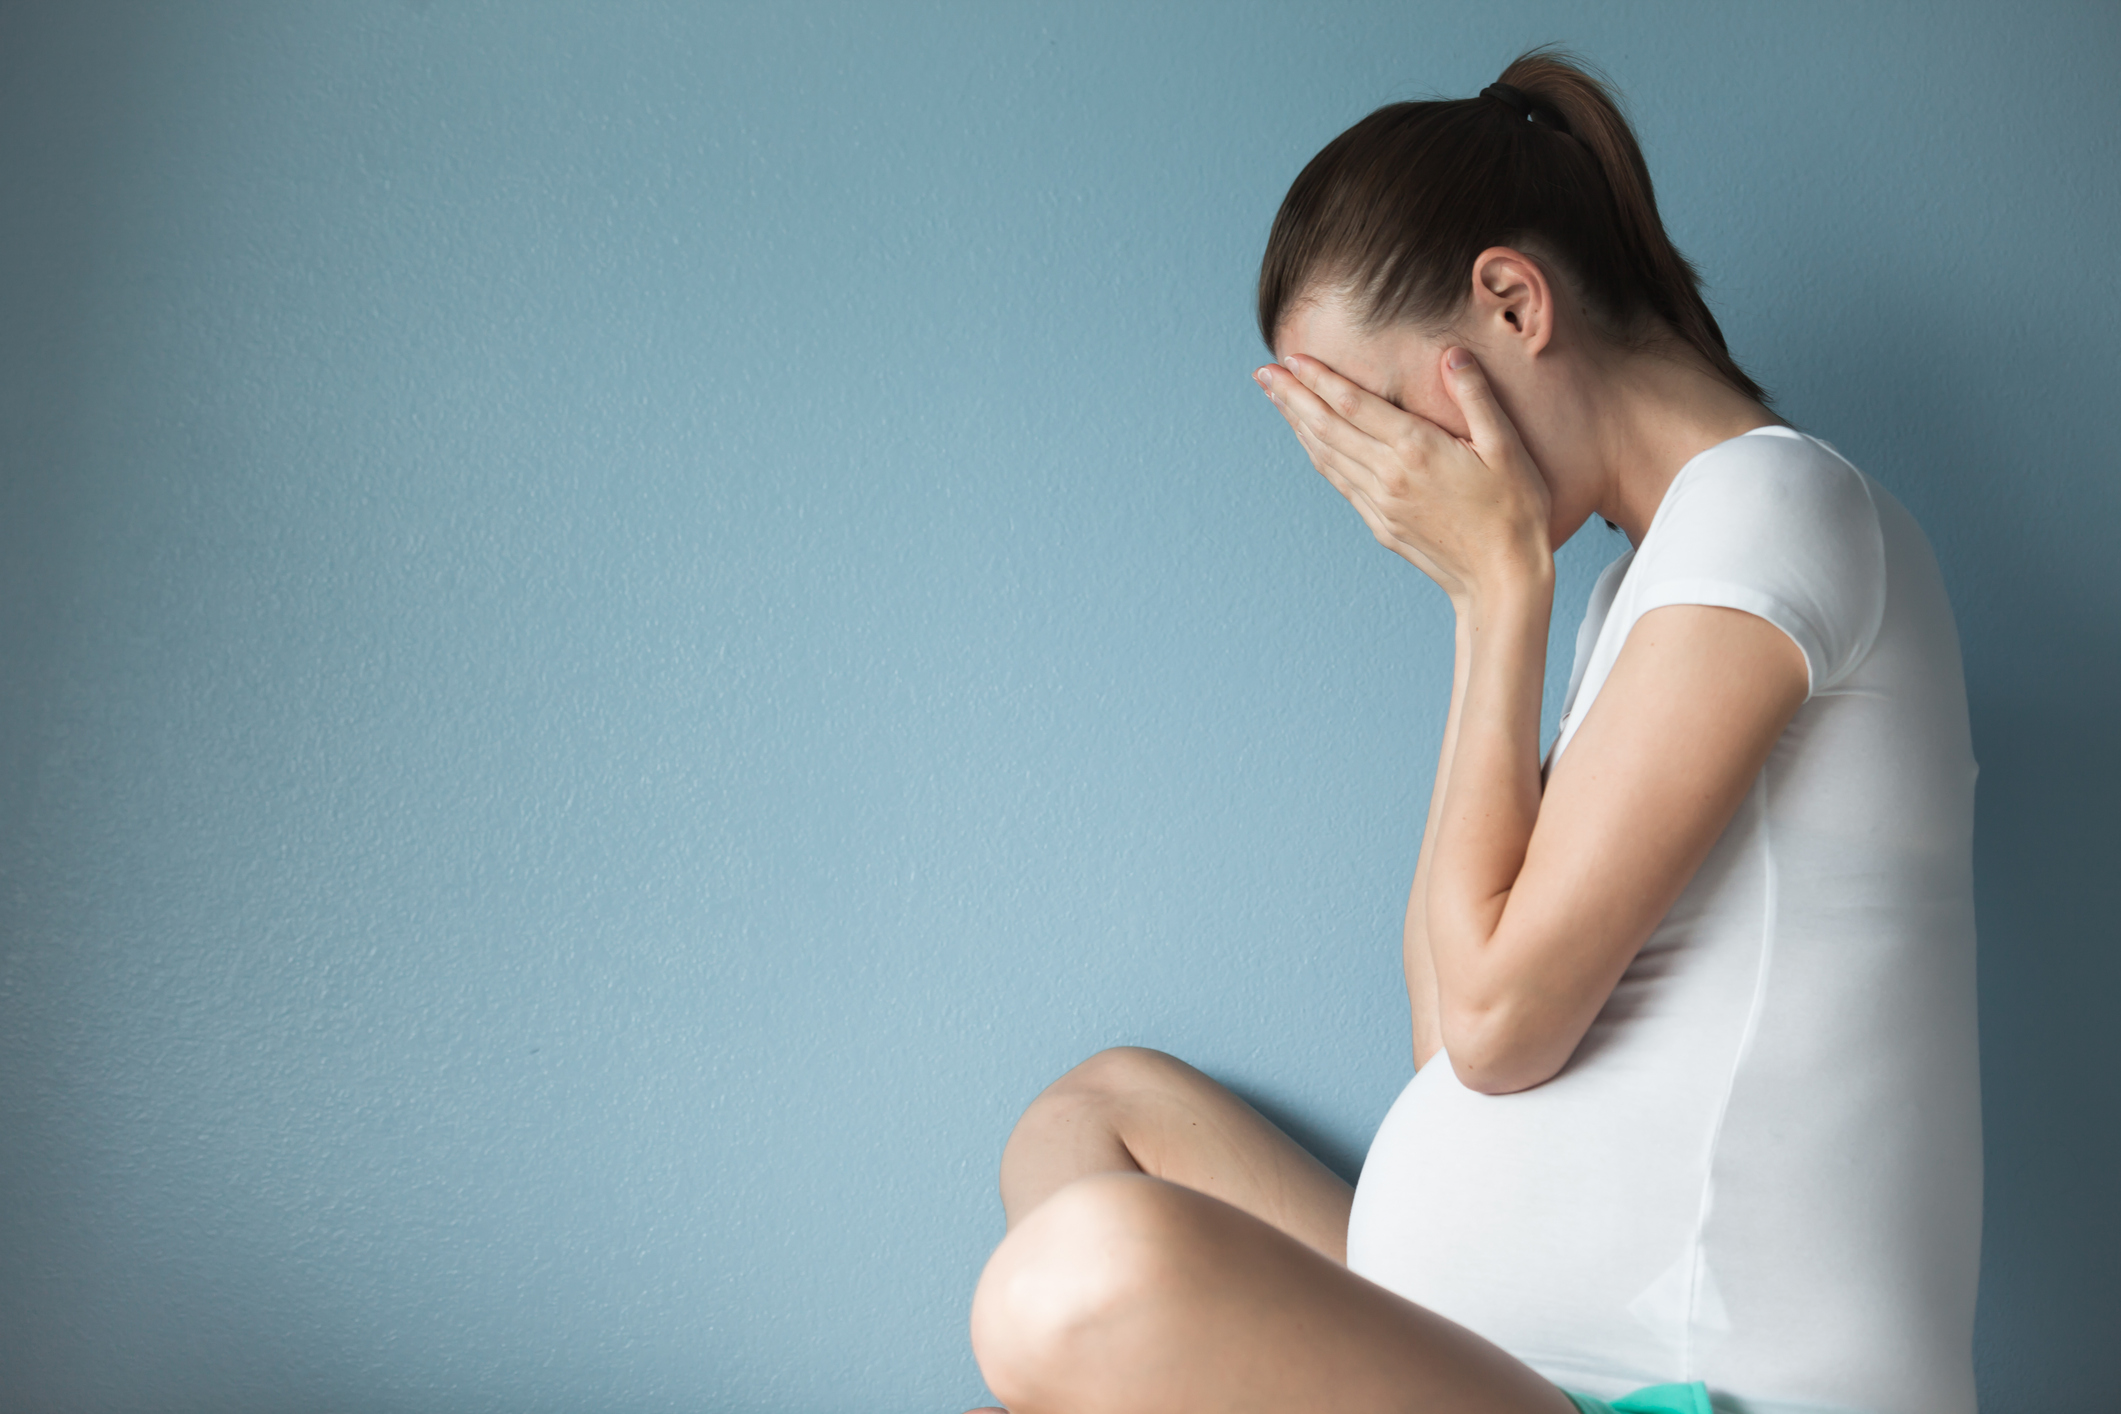 Mulher grávida sentada no chão de perfil, com o rosto escondido pelas mãos, como se estivesse chorando. Ela veste uma roupa toda branca. O fundo é azul.